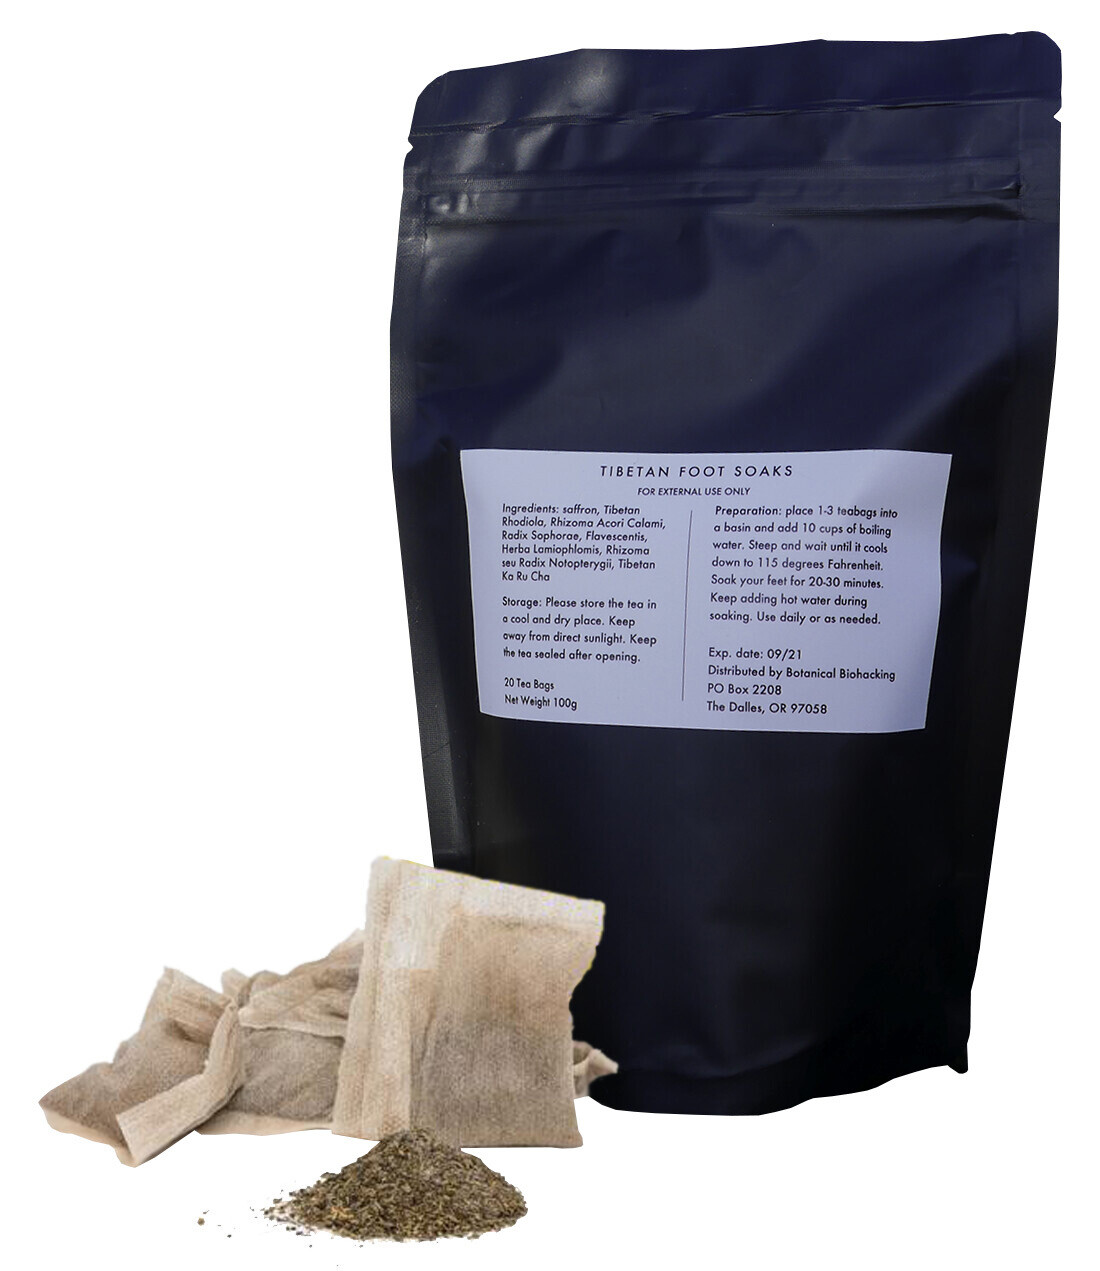 Tibetan Herbal Foot Soak - 20 Tea Bags